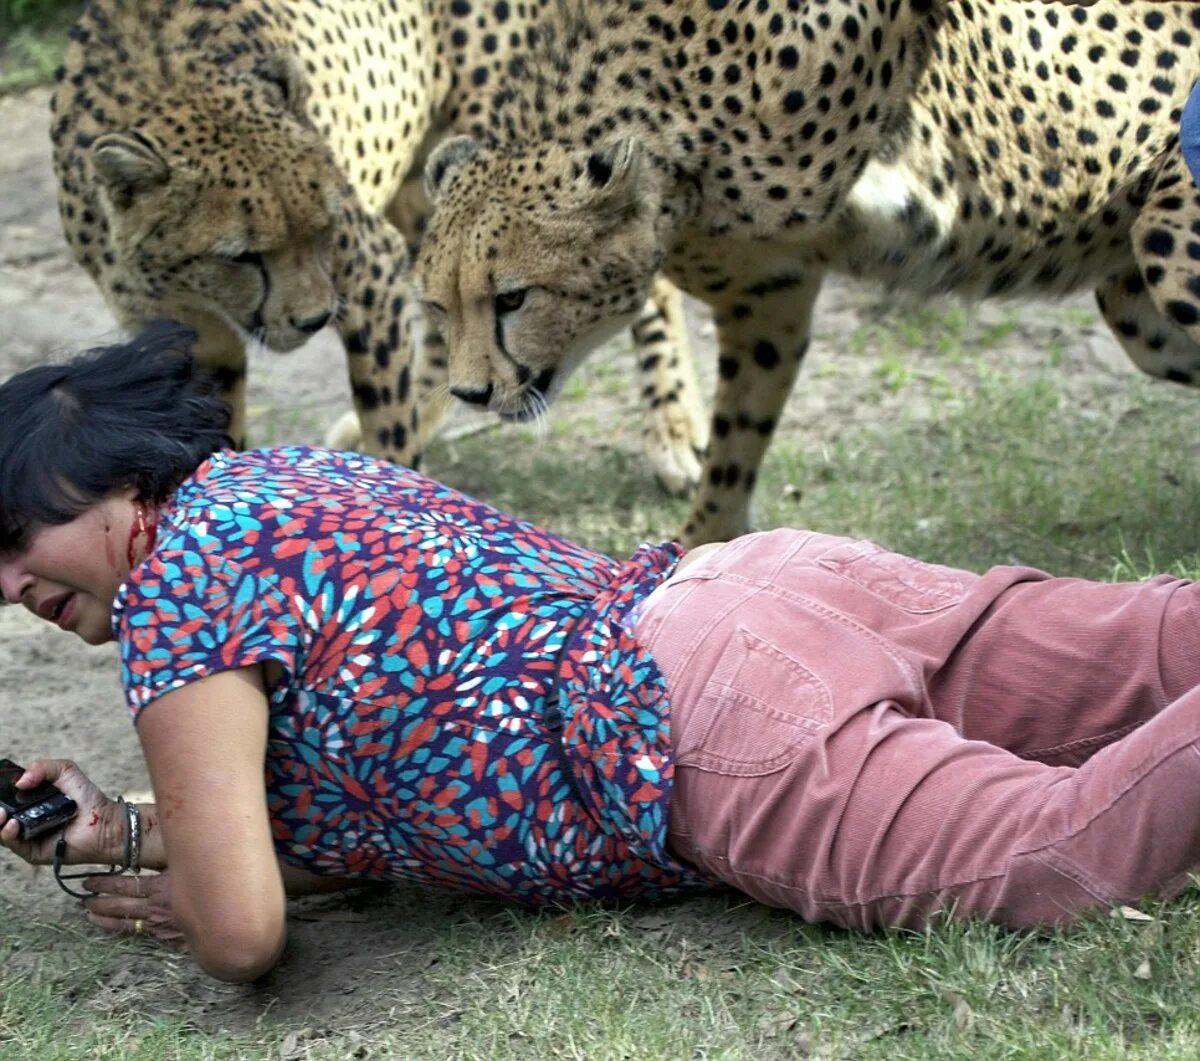 Покажи видео нападение. Ягуар нападает на леопарда. Животные на подают на людей. Напдениеживотнихналудей. Нападение животных на людей.